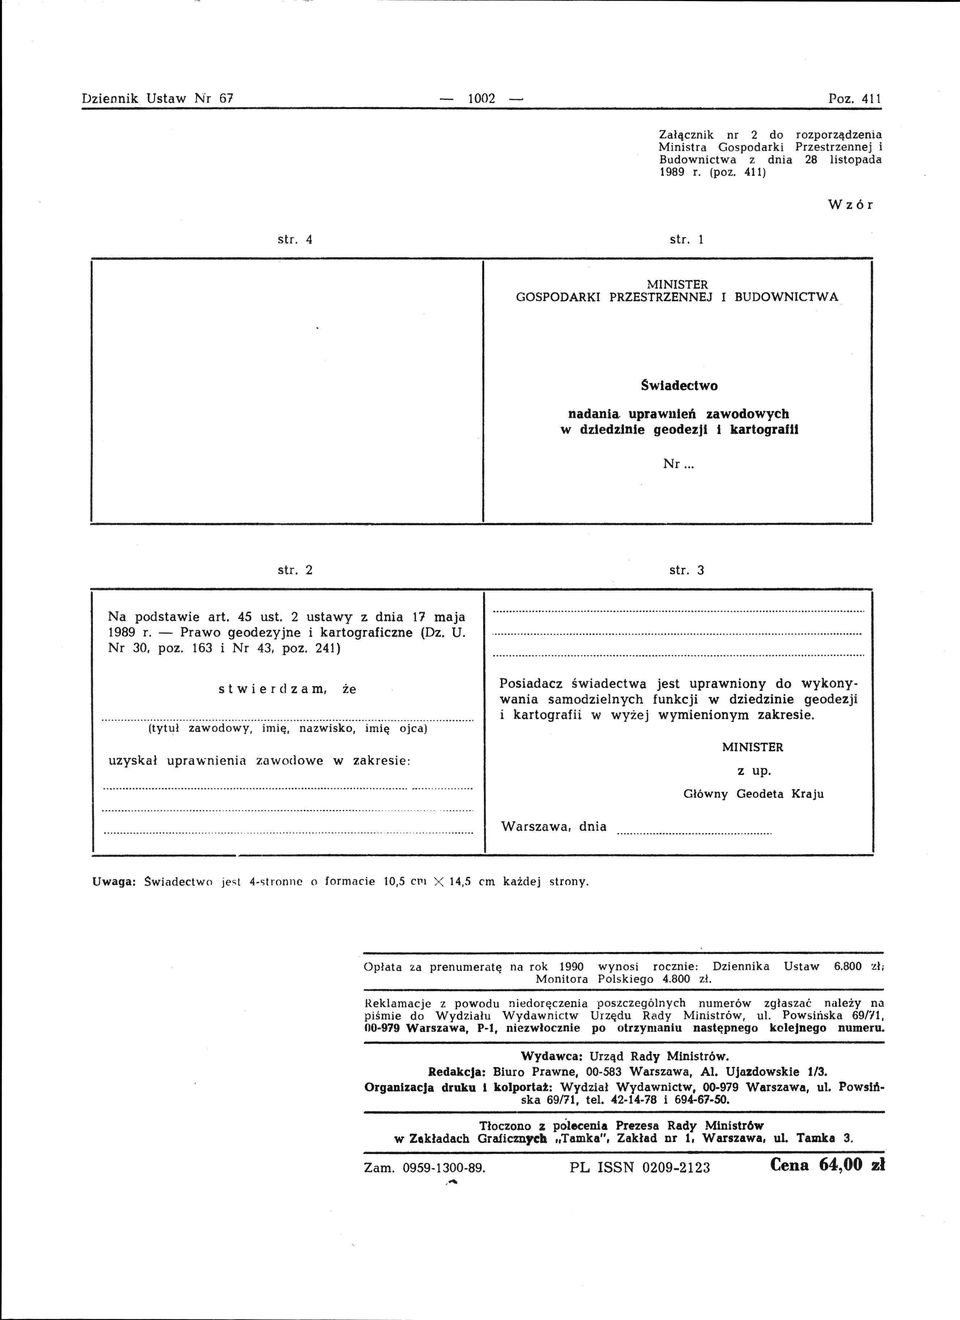 2 ustawy z dnia 17 maja 1989 r. - Prawo geodezyjne i kartograficzne (Dz. U. Nr 30, poz. 163 i Nr 43, poz.